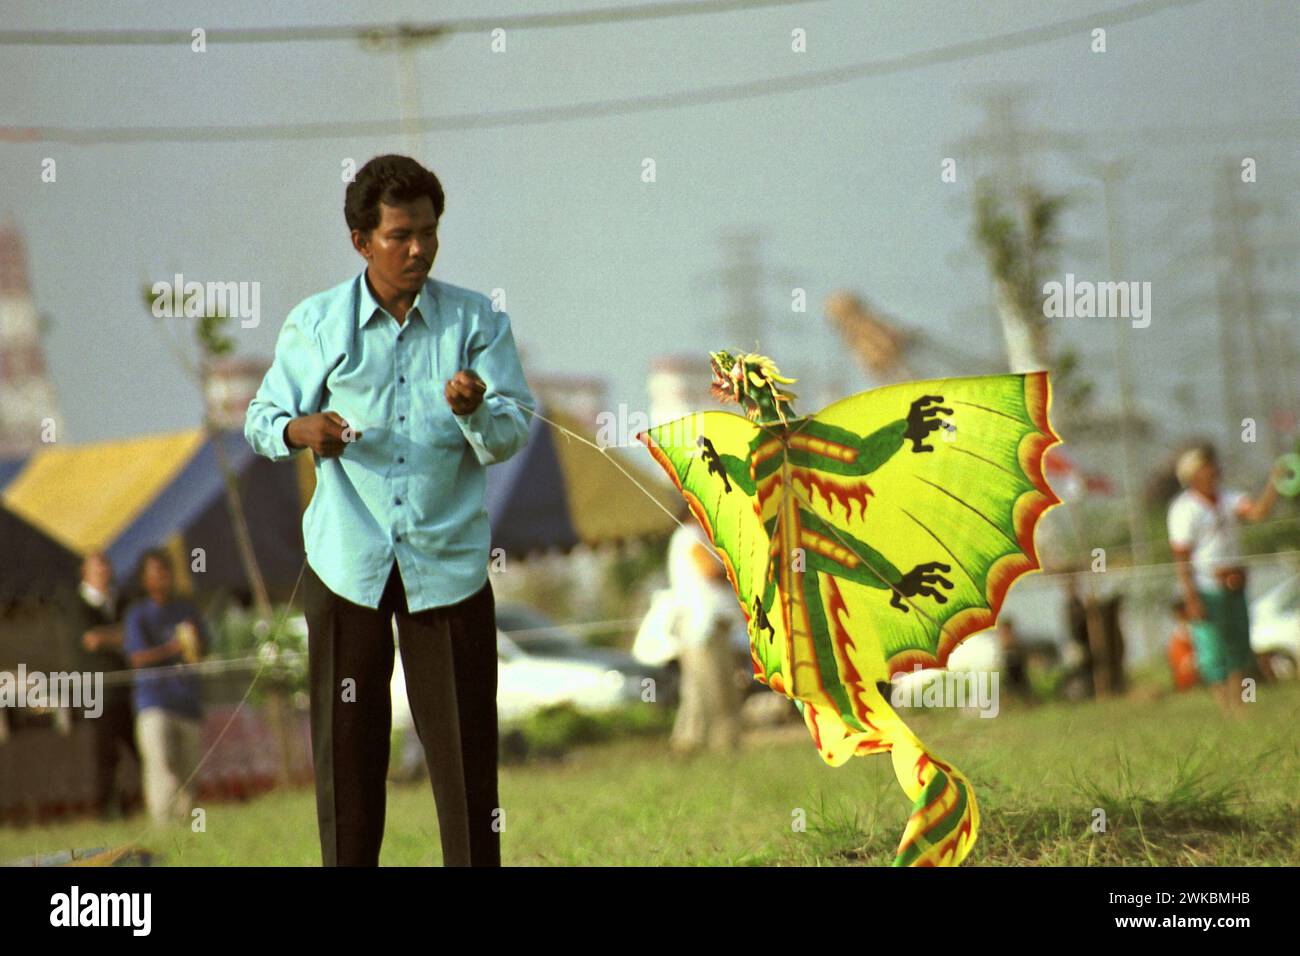 Un partecipante prepara un aquilone durante il Jakarta International Kite Festival 2004 che si è tenuto il 9-11 luglio presso Carnival Beach ad Ancol Dreamland, Ancol, Penjaringan, Giacarta Nord, Giacarta, Indonesia. Foto Stock